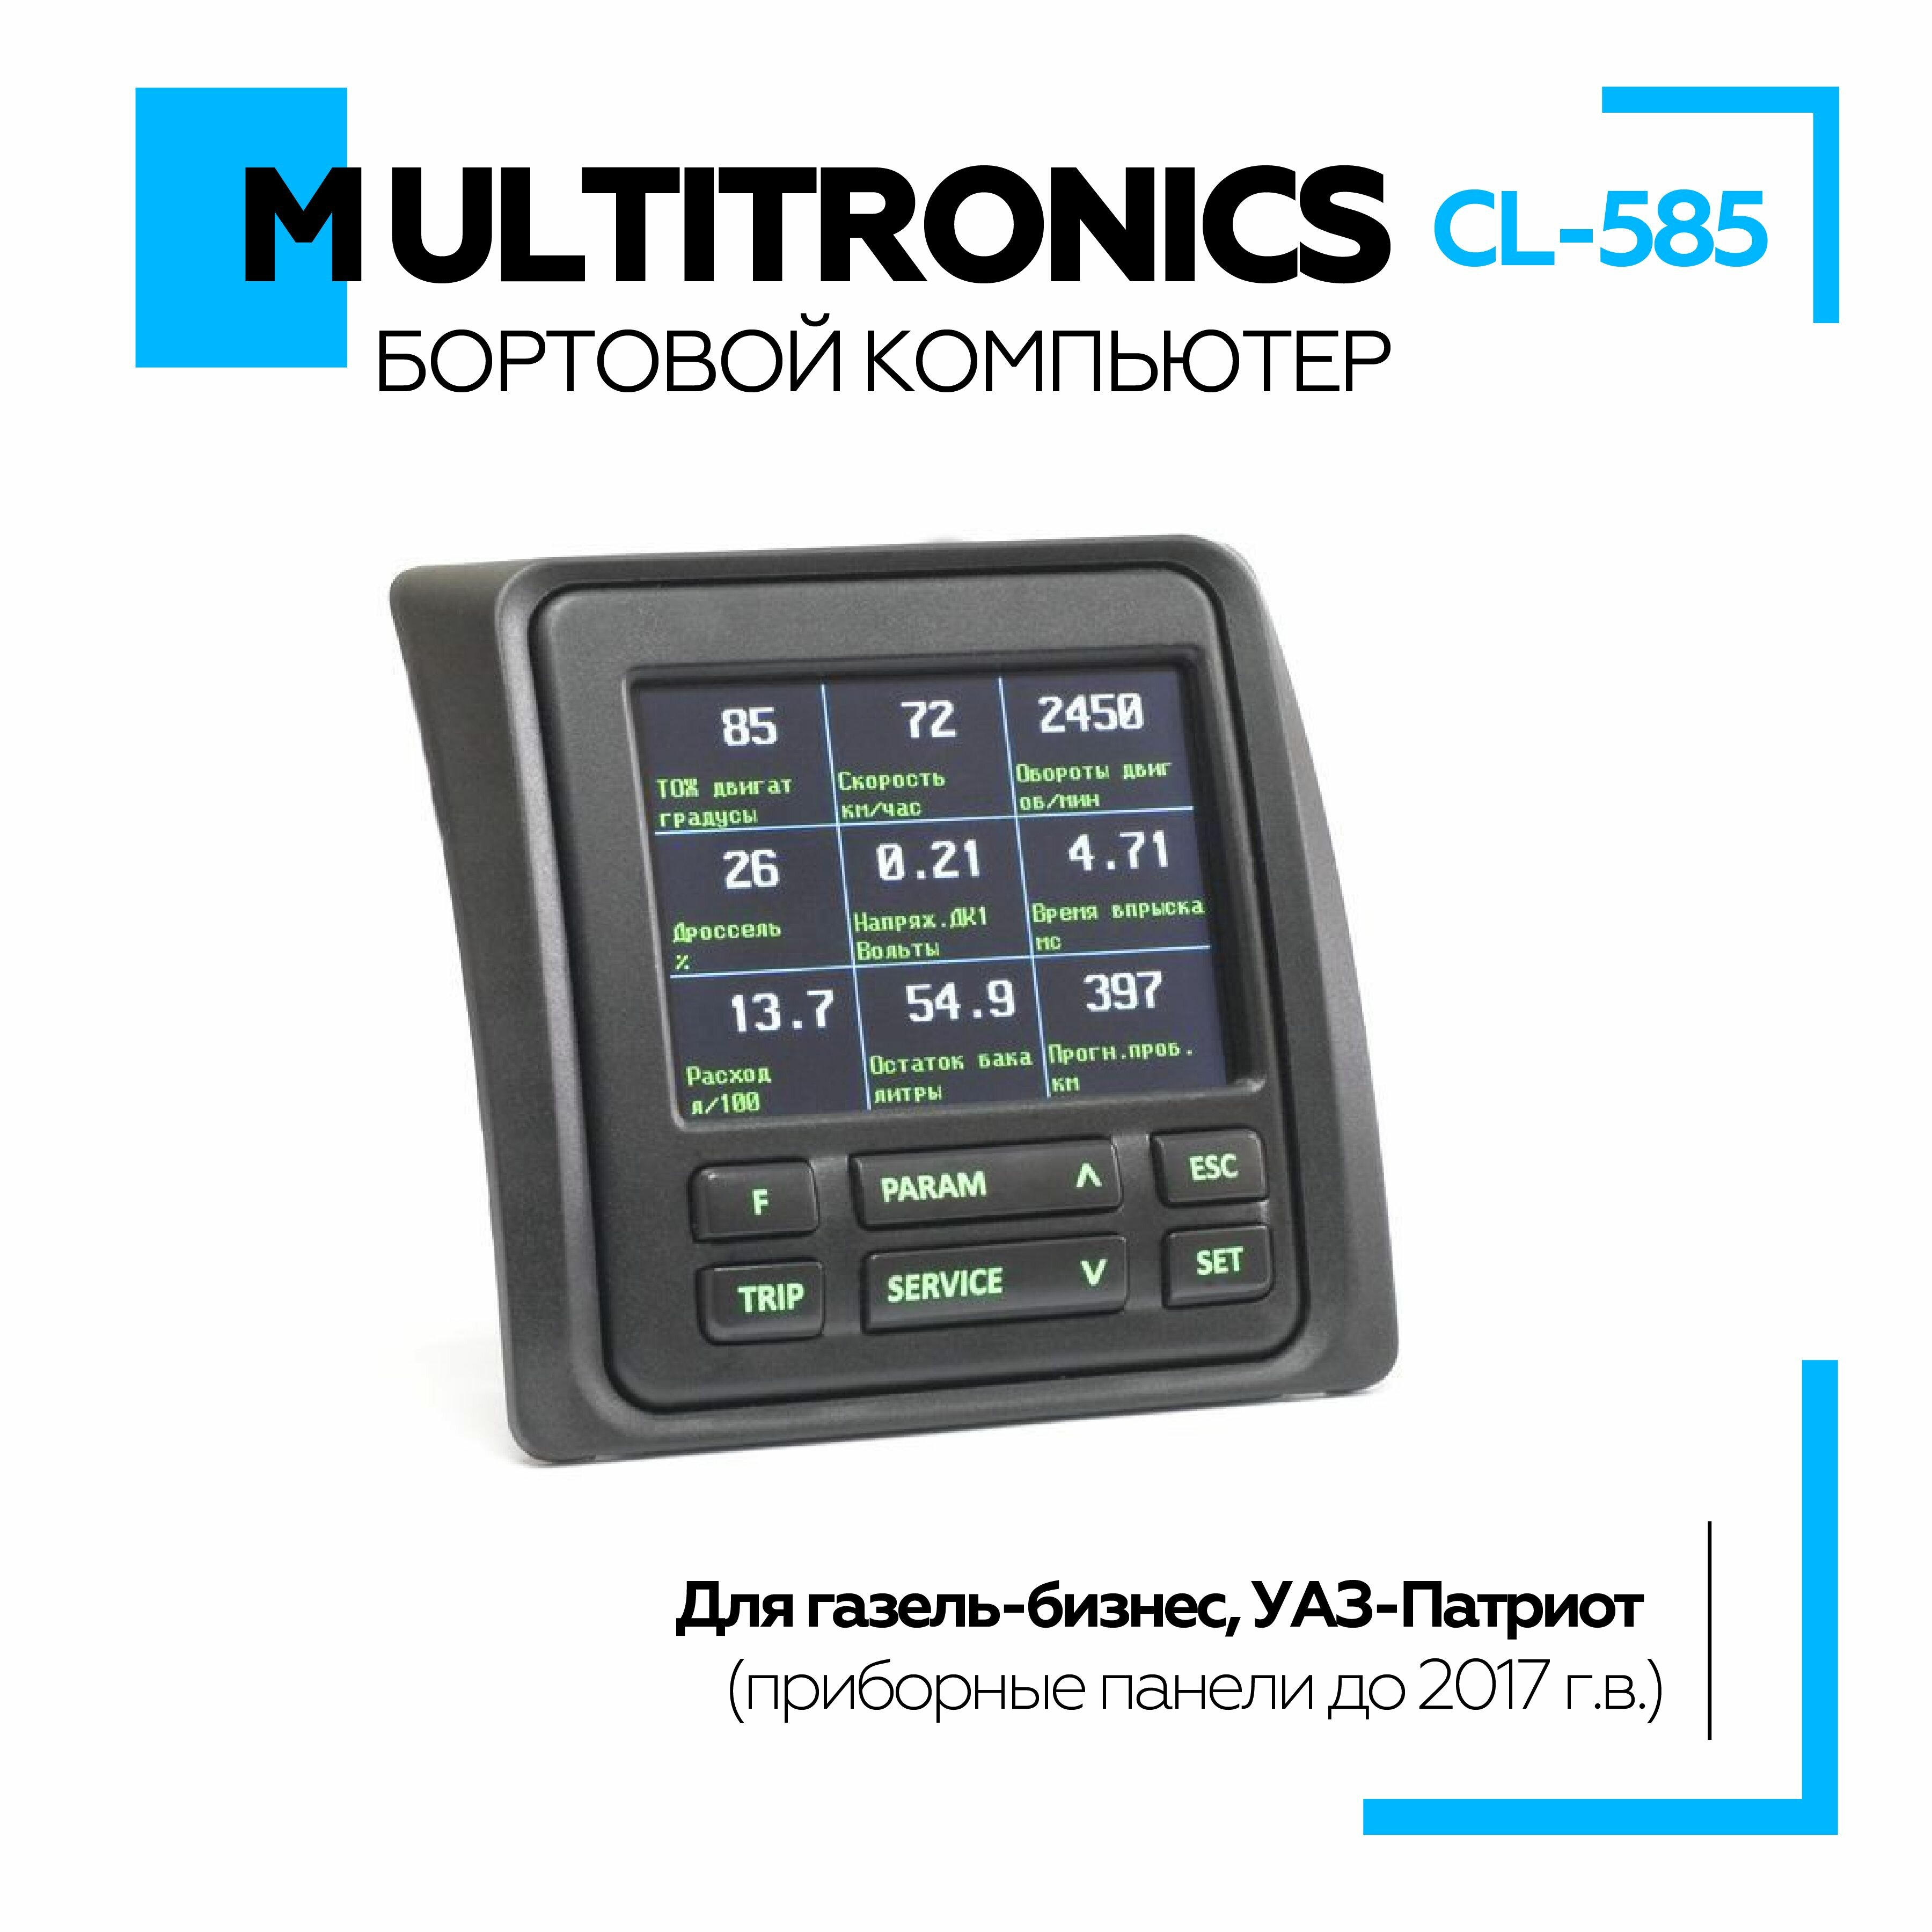 Бортовой компьютер Multitronics СL-585 для Газель-Бизнес УАЗ-Патриот (приборные панели до 2017 г.в.).